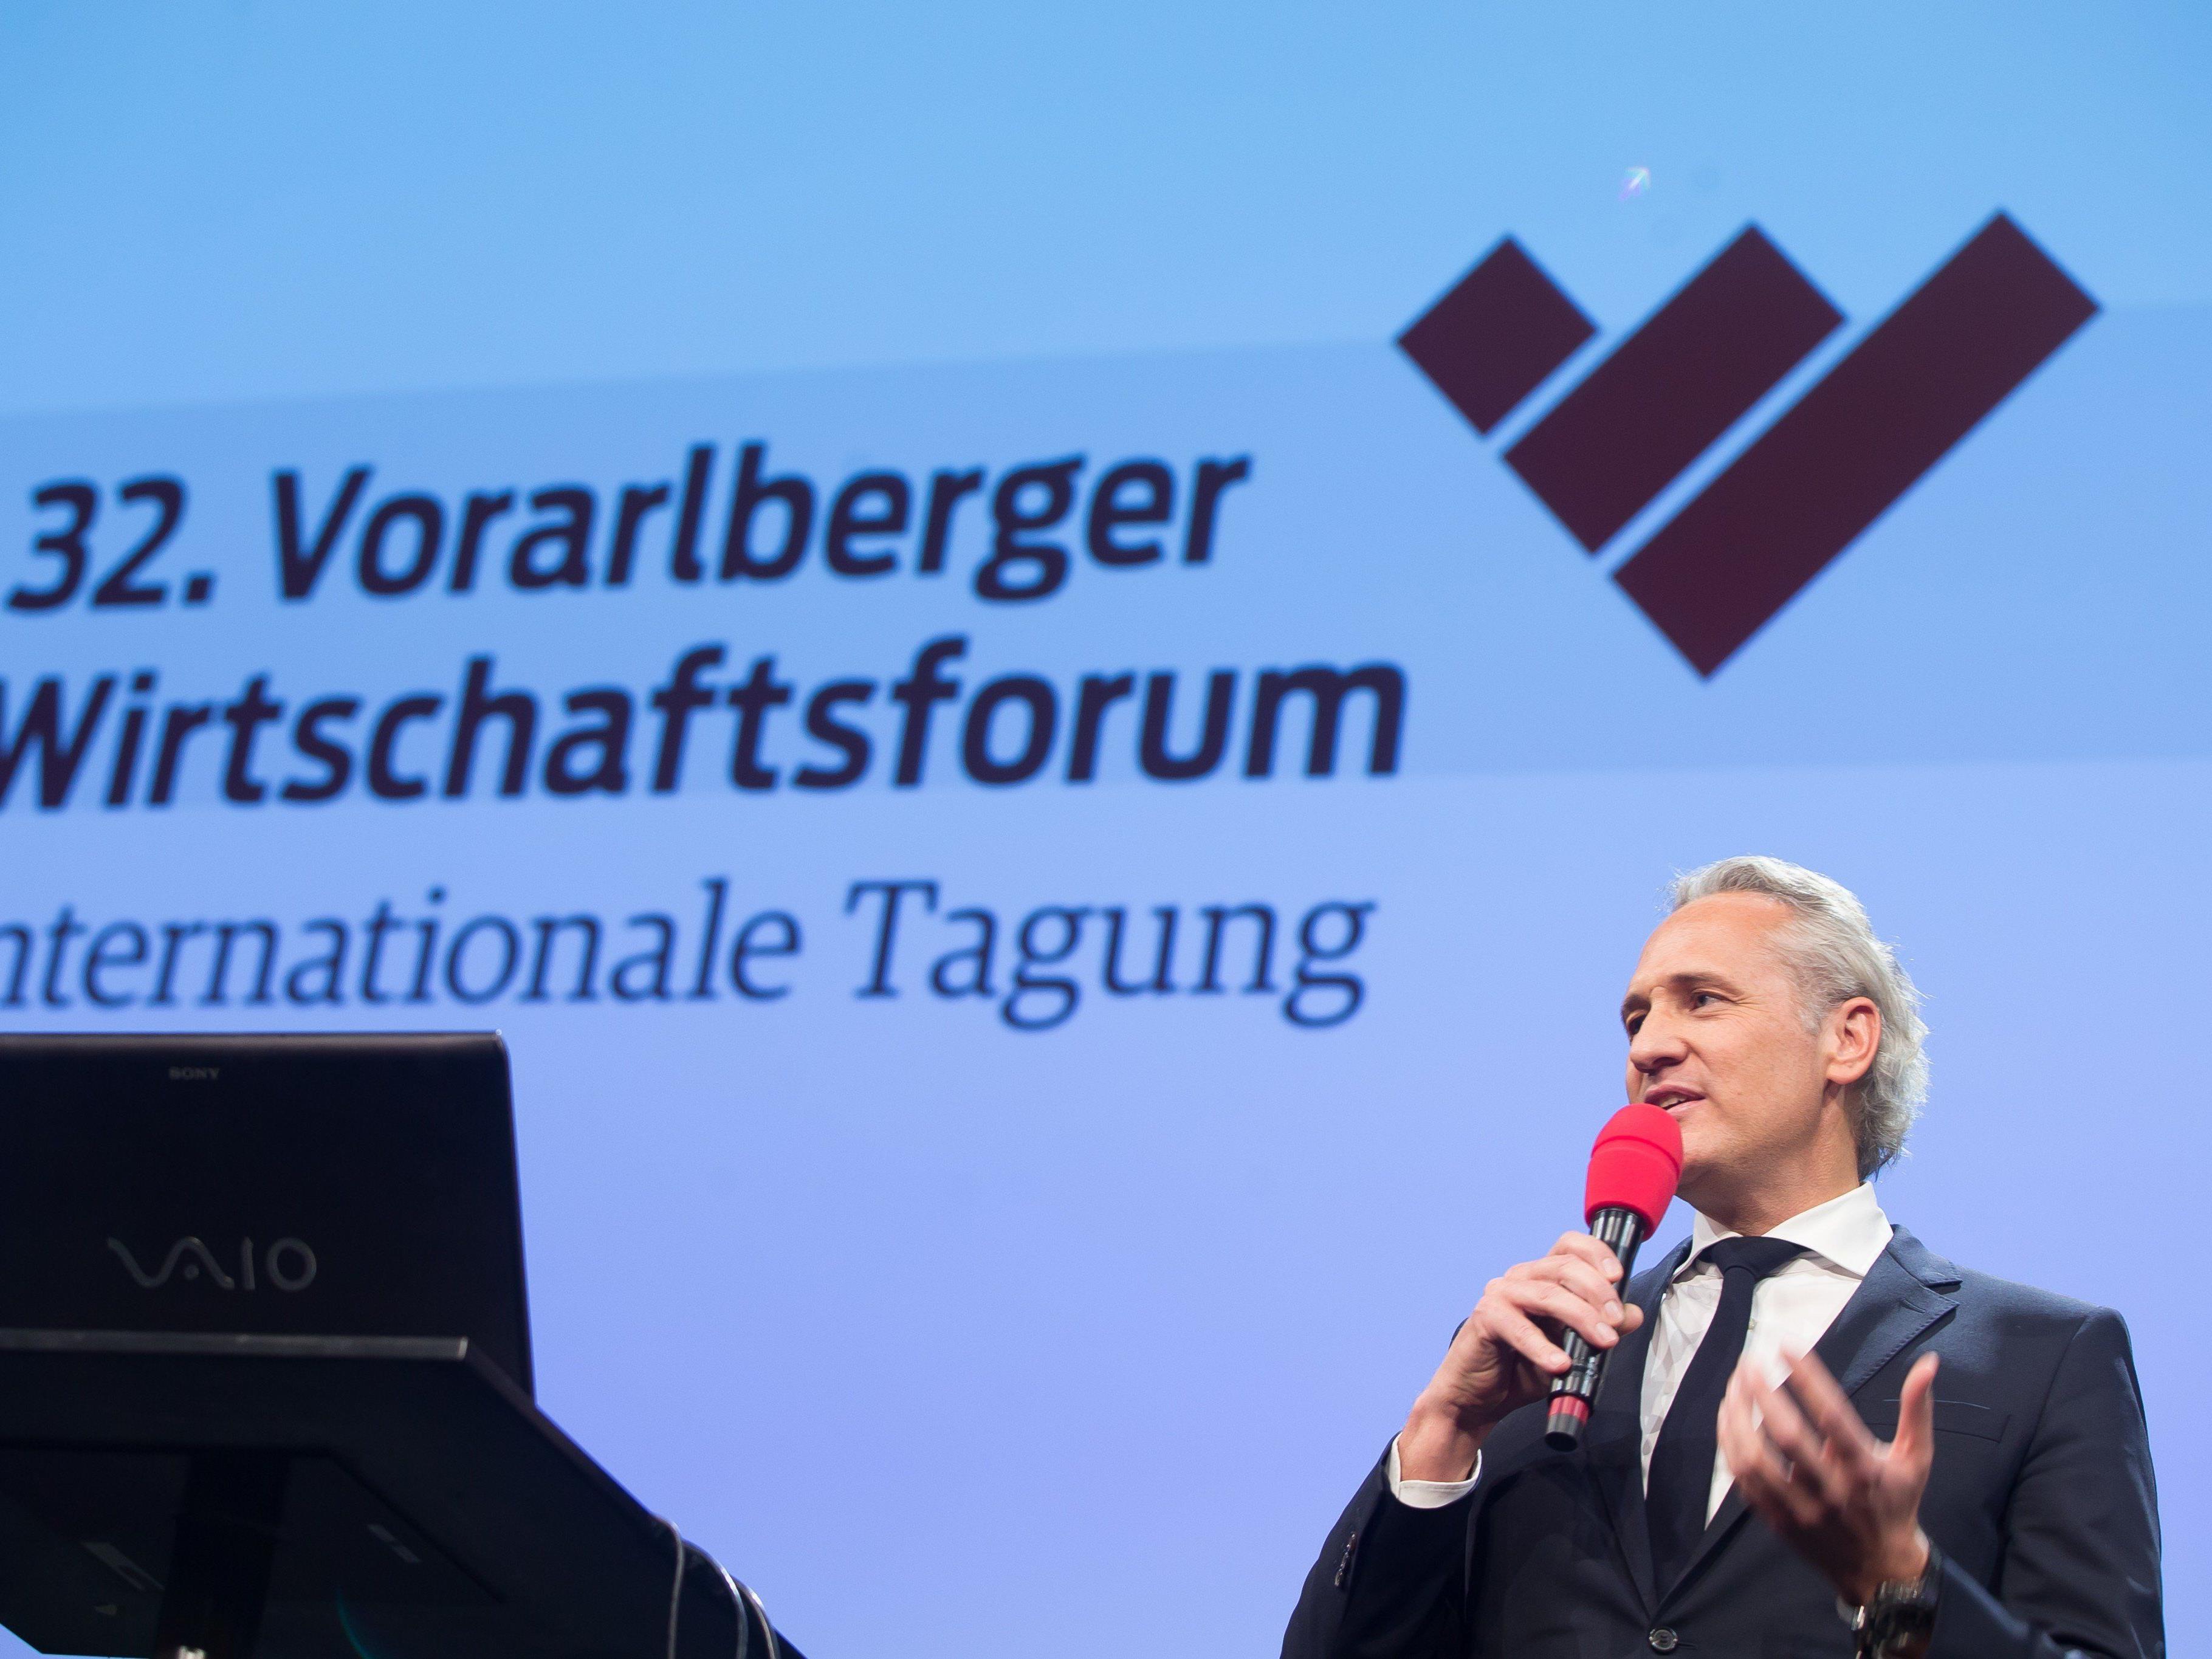 Martin Ohneberg, im Bild auf dem 32. Vorarlberger Wirtschaftsforum, fordert im Interview mit dem Wirtschaftsblatt "Taten statt Worte".